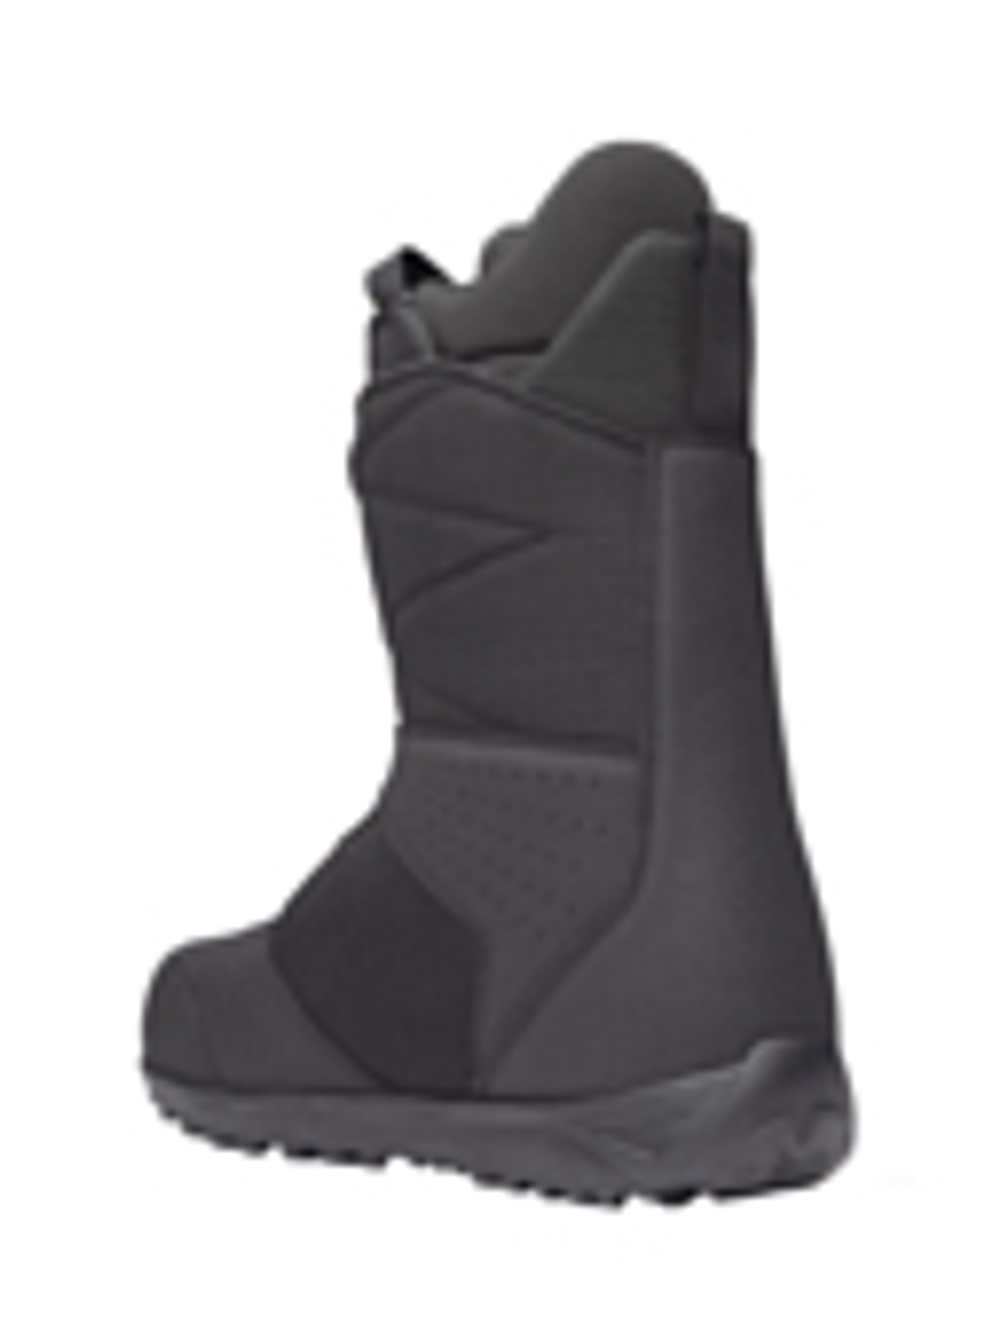 Ботинки для сноуборда NIDECKER 2023-24 Sierra Black (US:9,5)